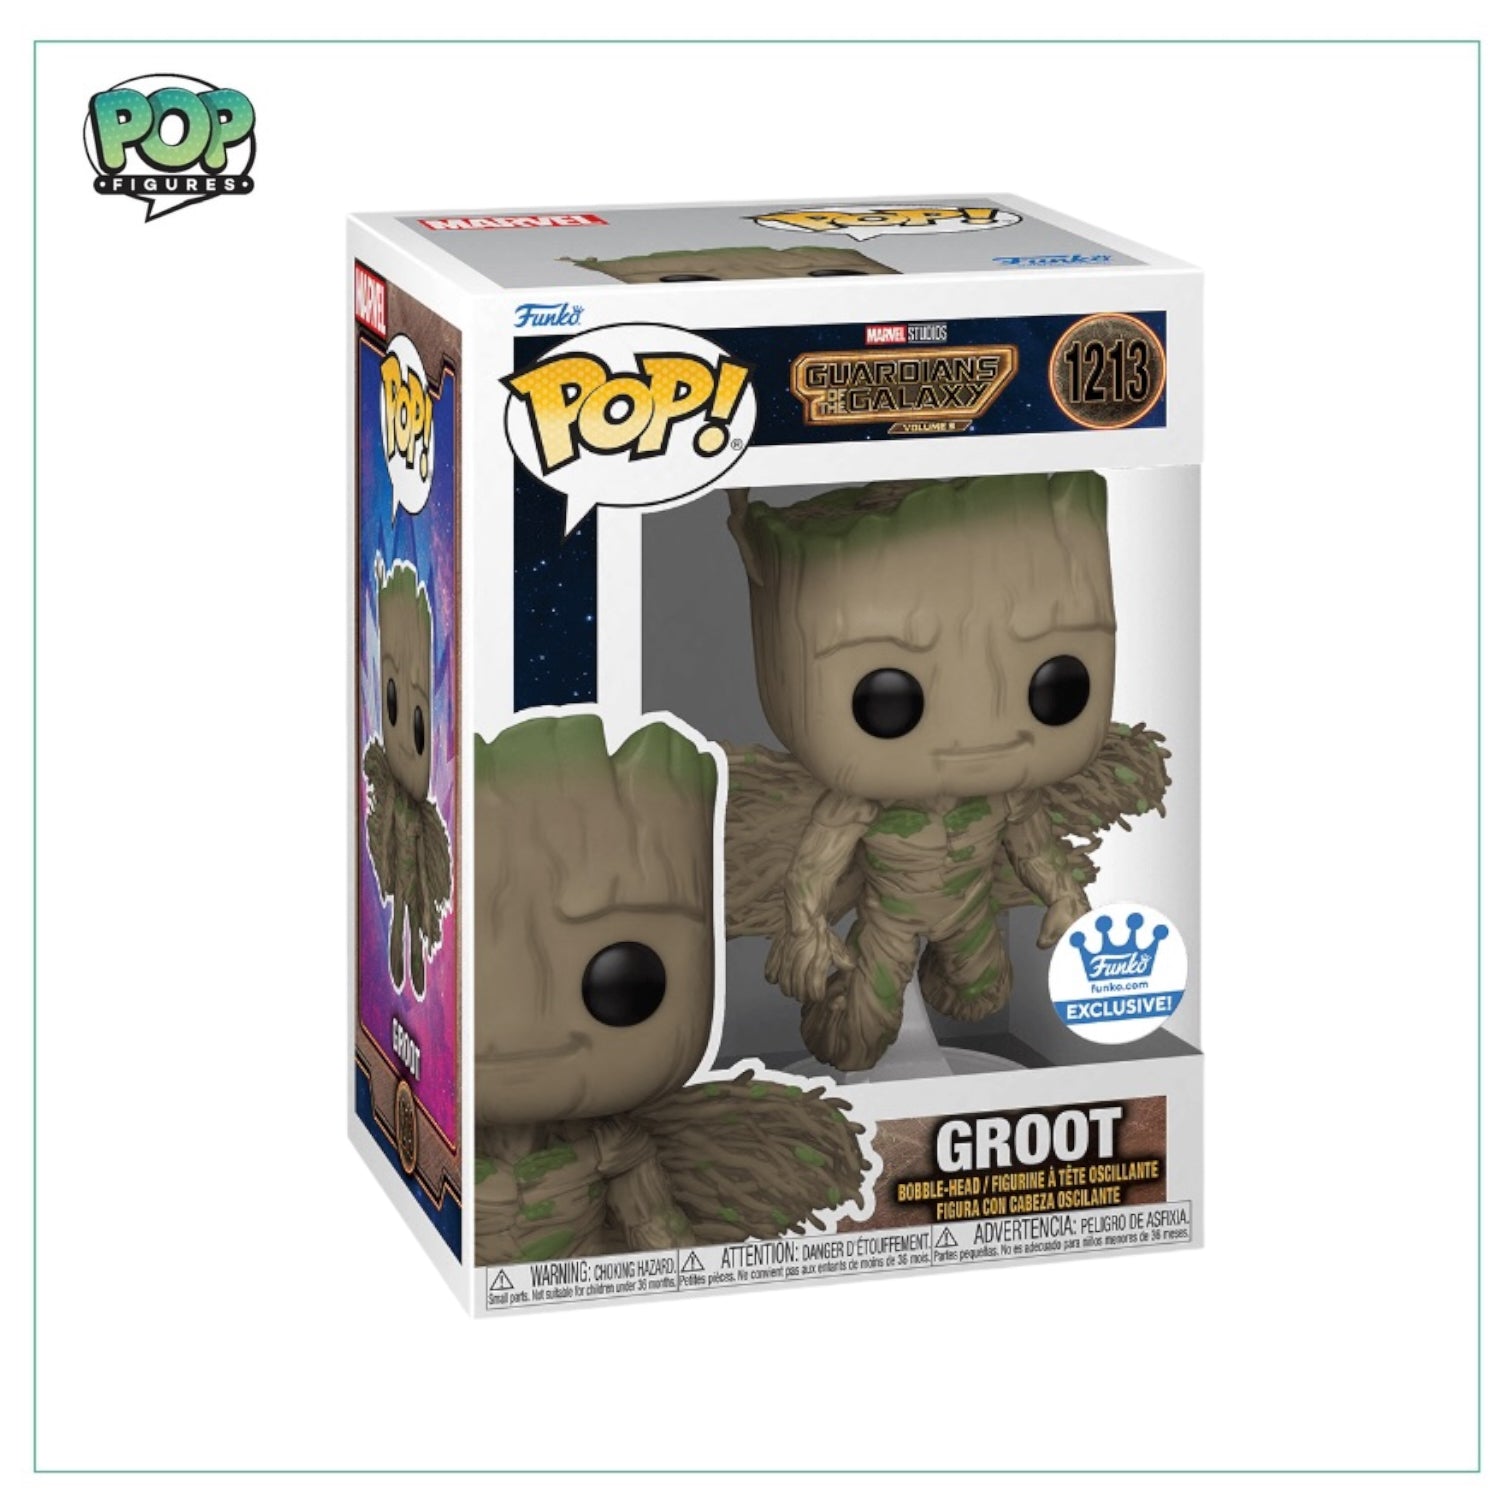 Buy Pop! Groot at Funko.